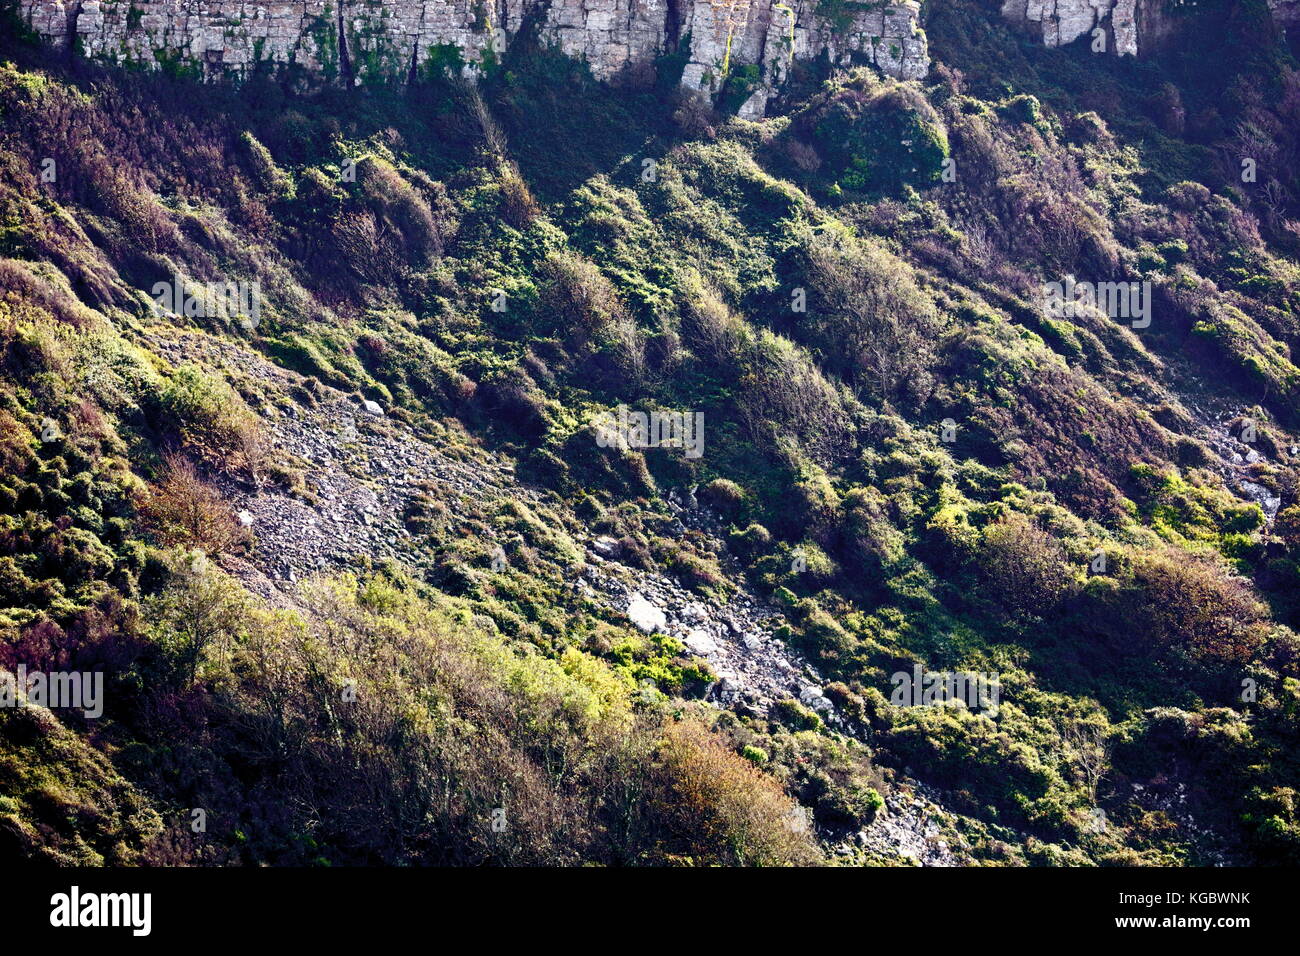 Contre-jour Beleuchtung auf vegetatives Wachstum über historische Talus Steinschlag Pisten von emmets Hill, st aldhelm Kopf, Dorset UK Stockfoto